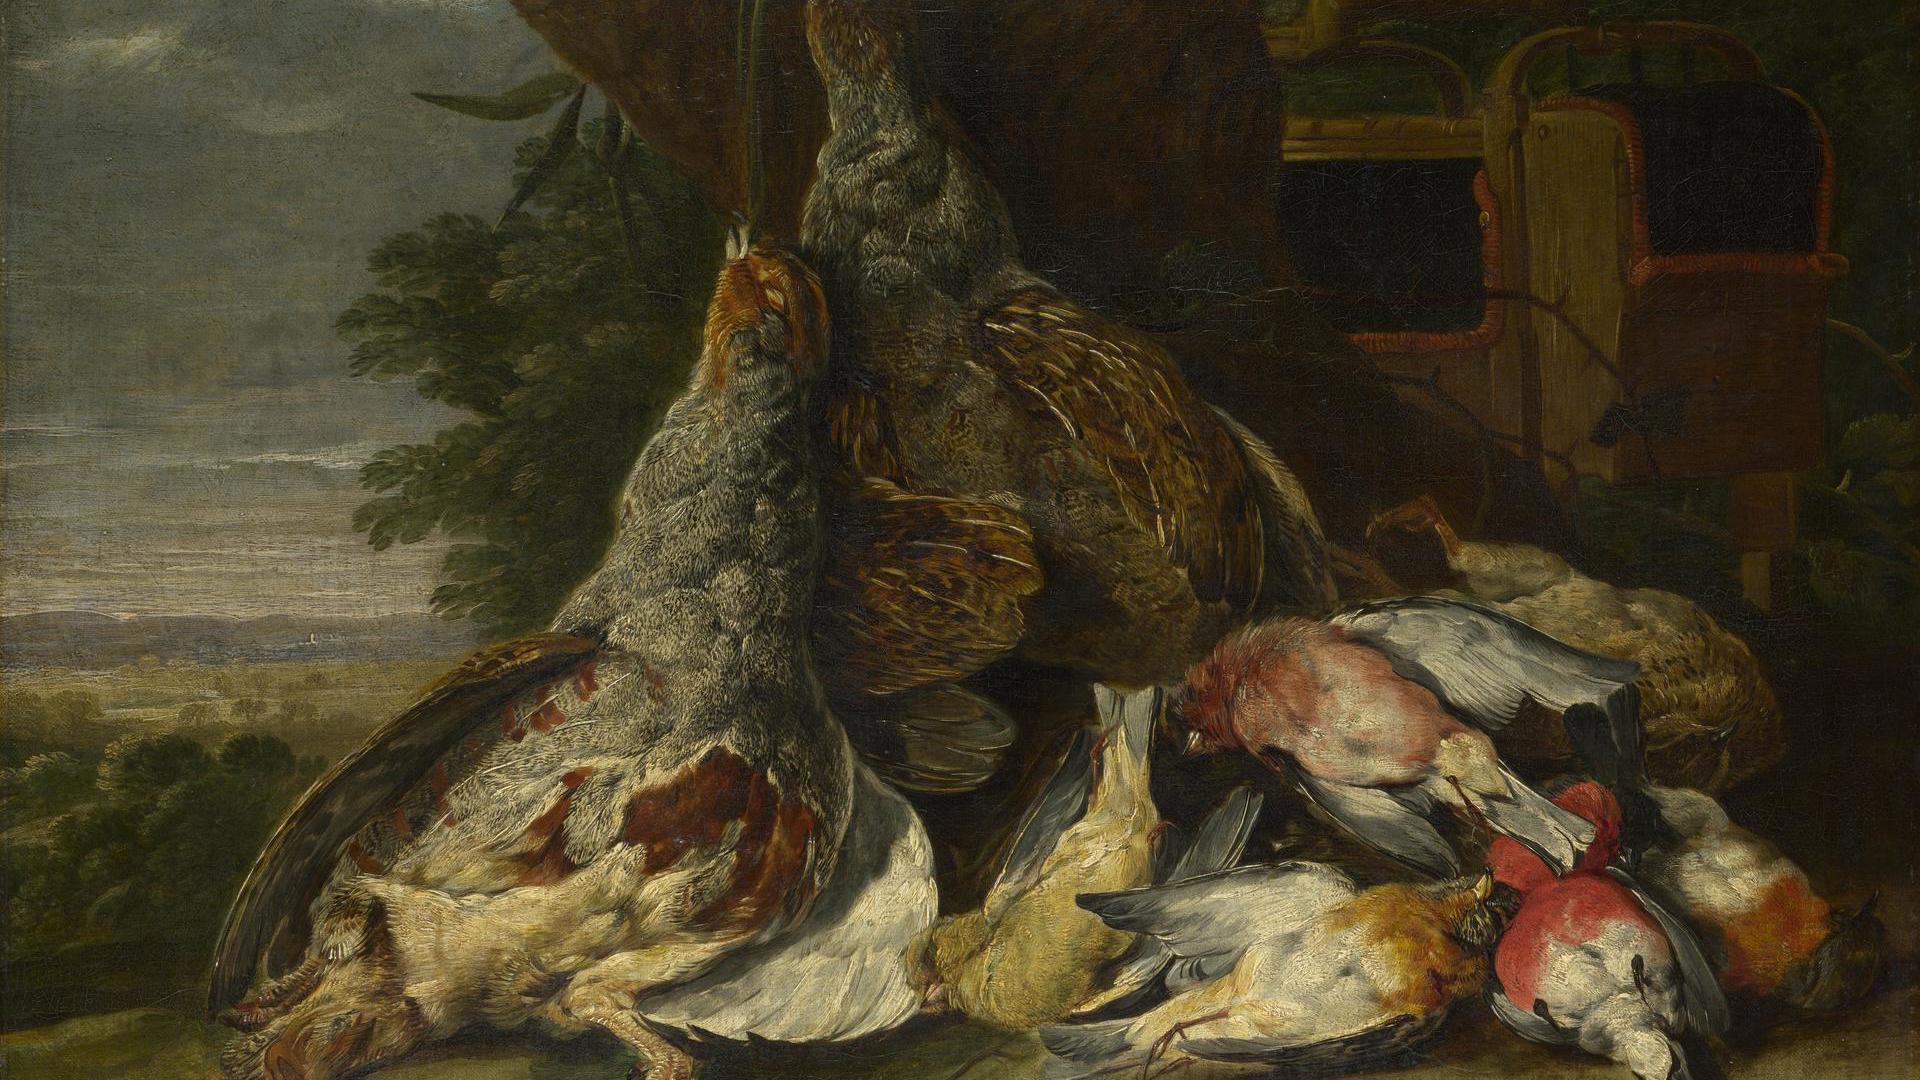 Dead Birds in a Landscape by Jan Fyt